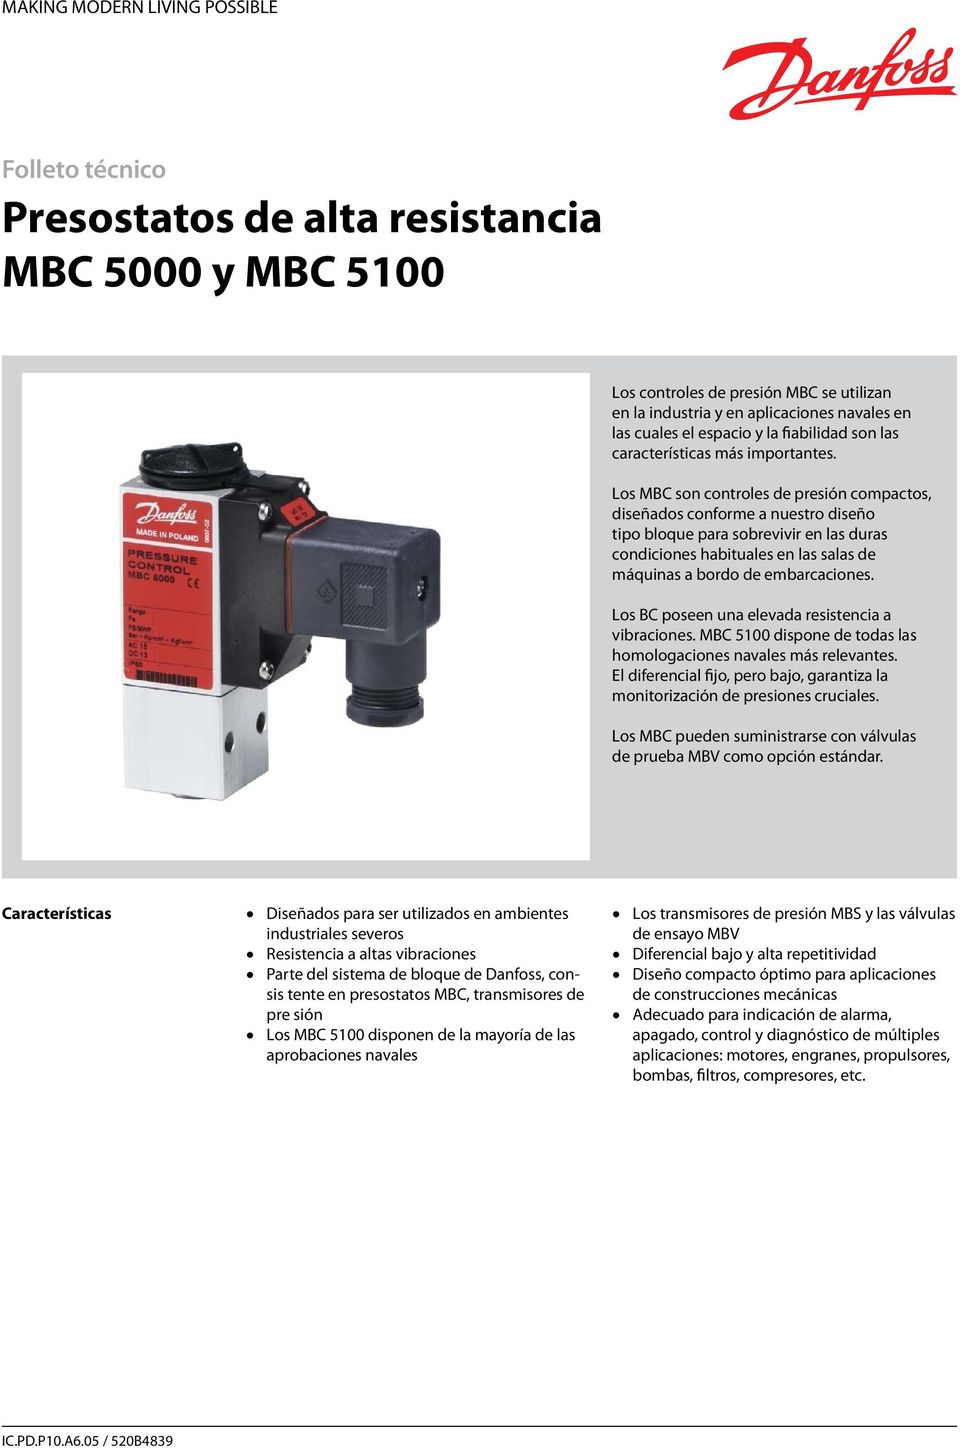 Los MBC son controles de presión compactos, diseñados conforme a nuestro diseño tipo bloque para sobrevivir en las duras condiciones habituales en las salas de máquinas a bordo de embarcaciones.